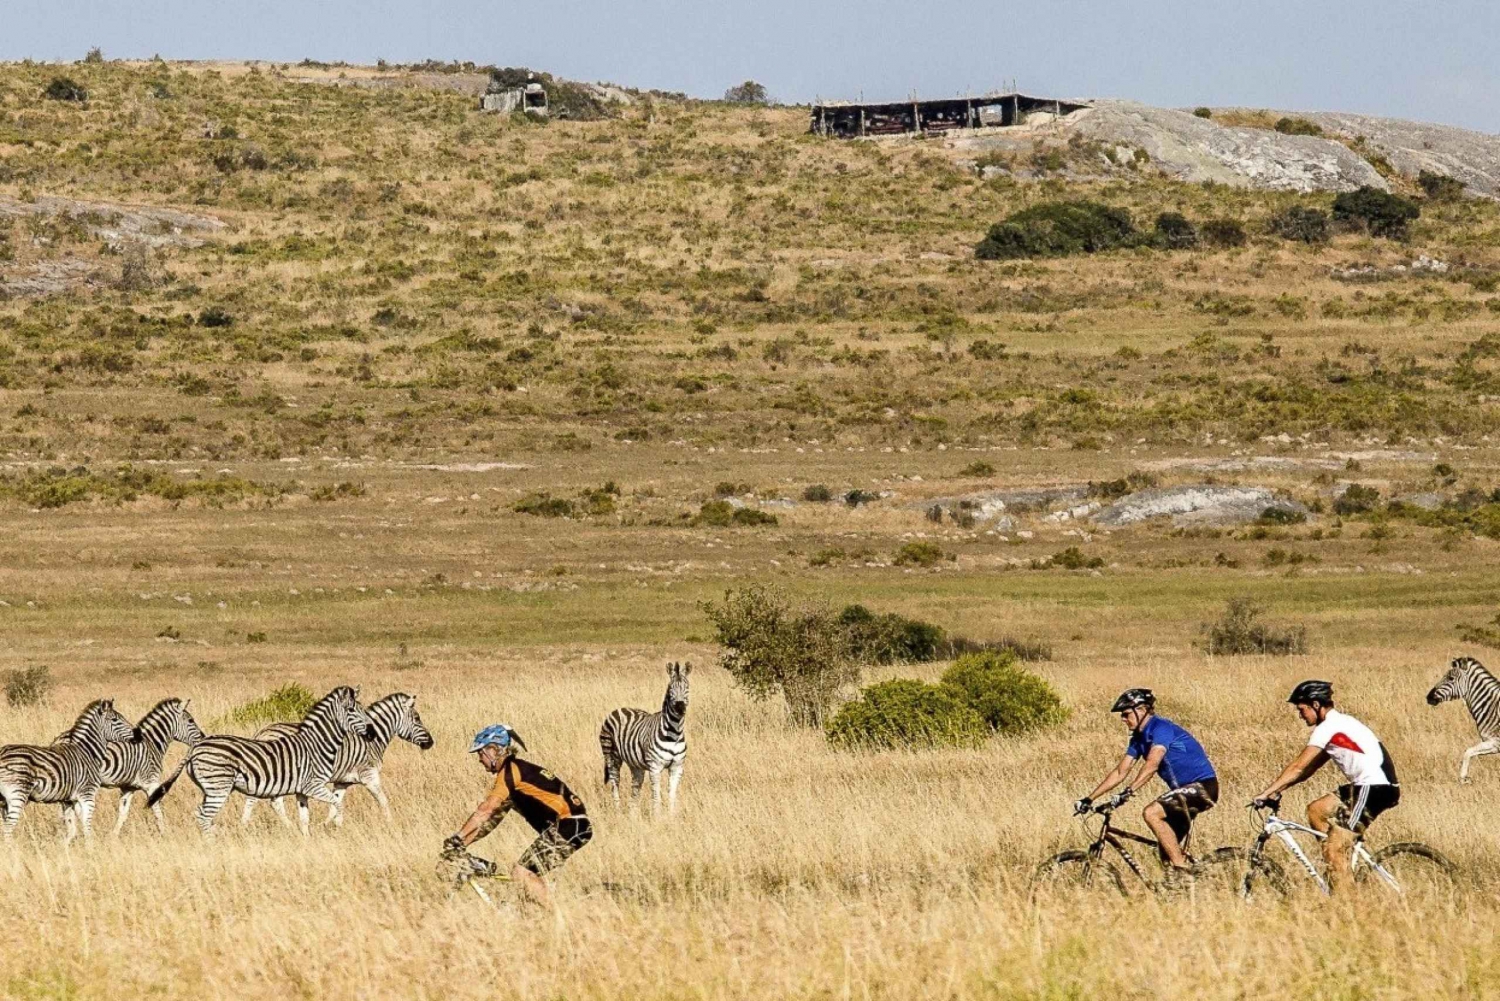 Yzerfontein Excursión en Bicicleta y Paseo por el Centro del Patrimonio San con Almuerzo